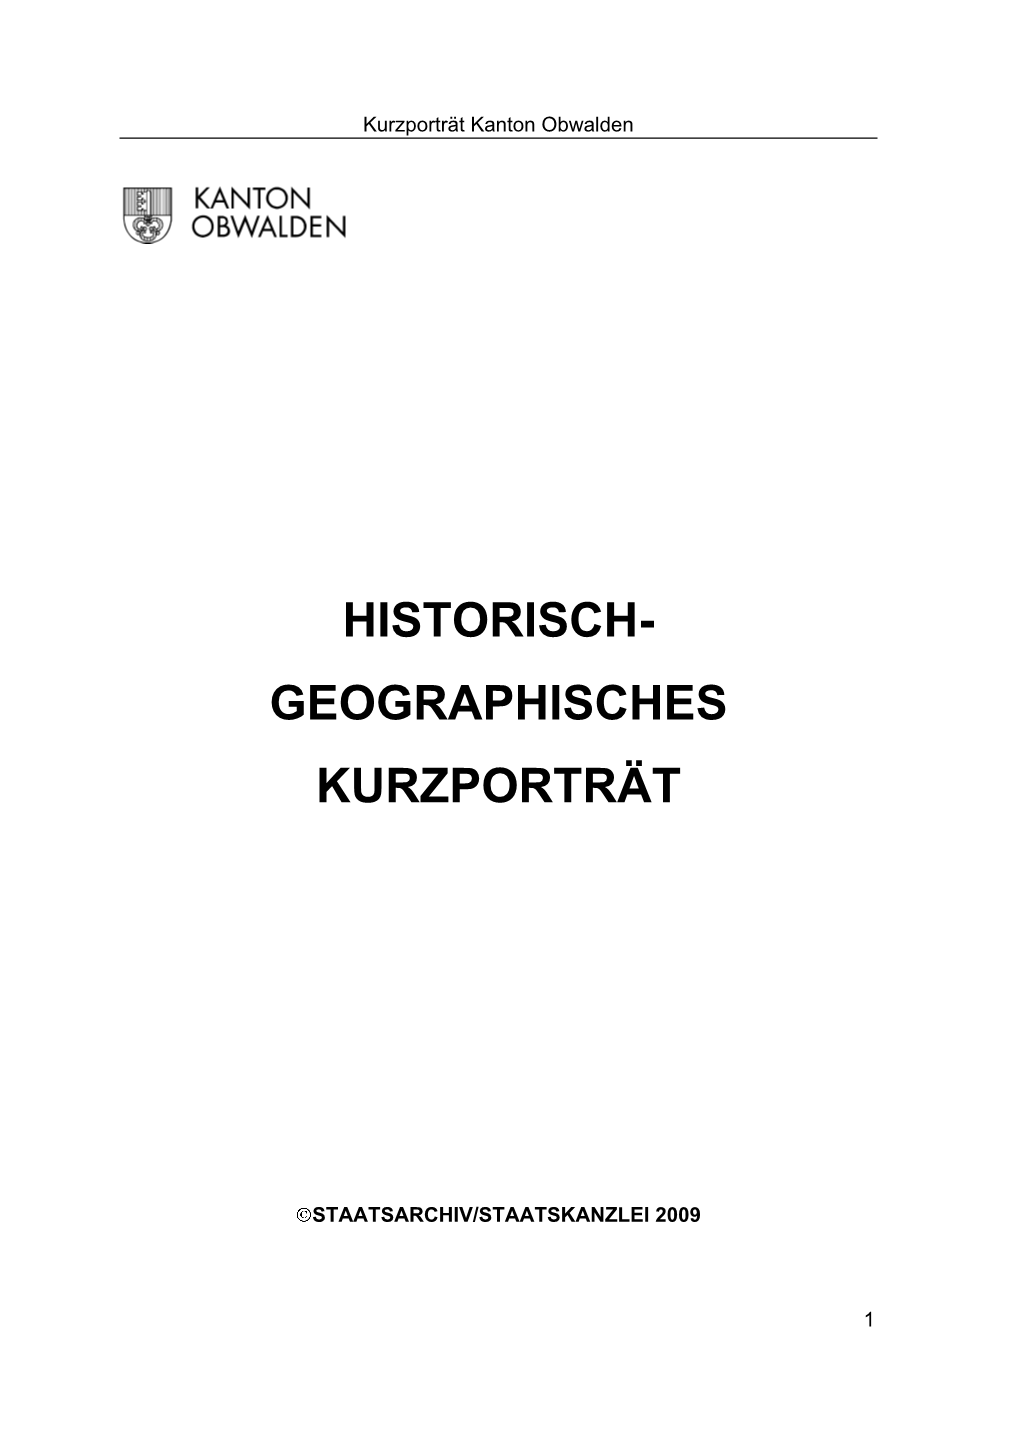 Historisch- Geographisches Kurzporträt